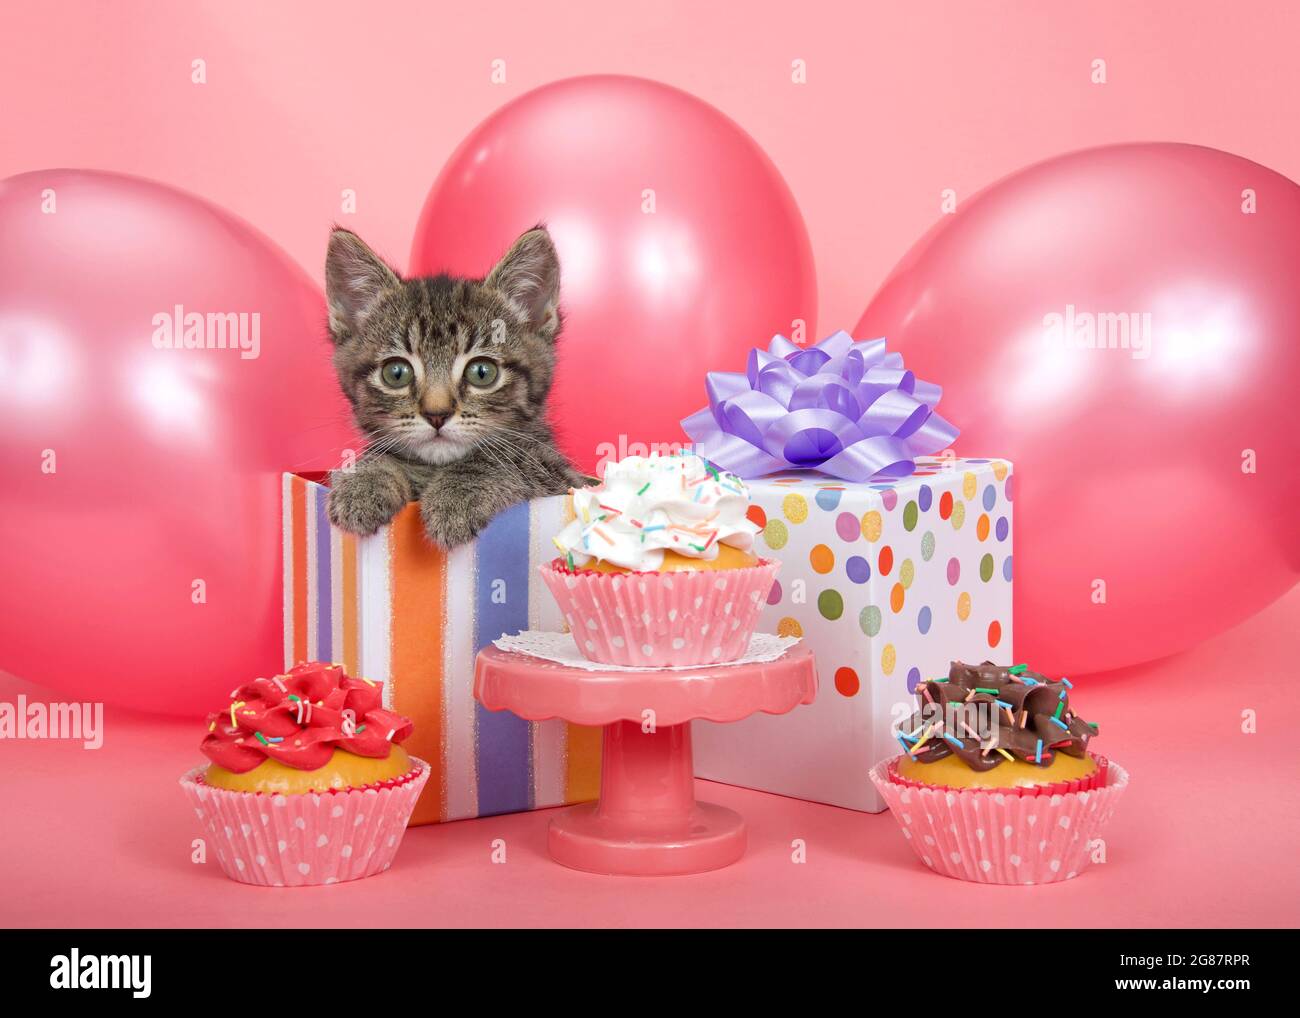 Carino gattino tabby a righe grigio che svetta da un regalo di compleanno a righe circondato da palloncini rosa brillante, piedistallo con torte da tazza di vario sapore Foto Stock